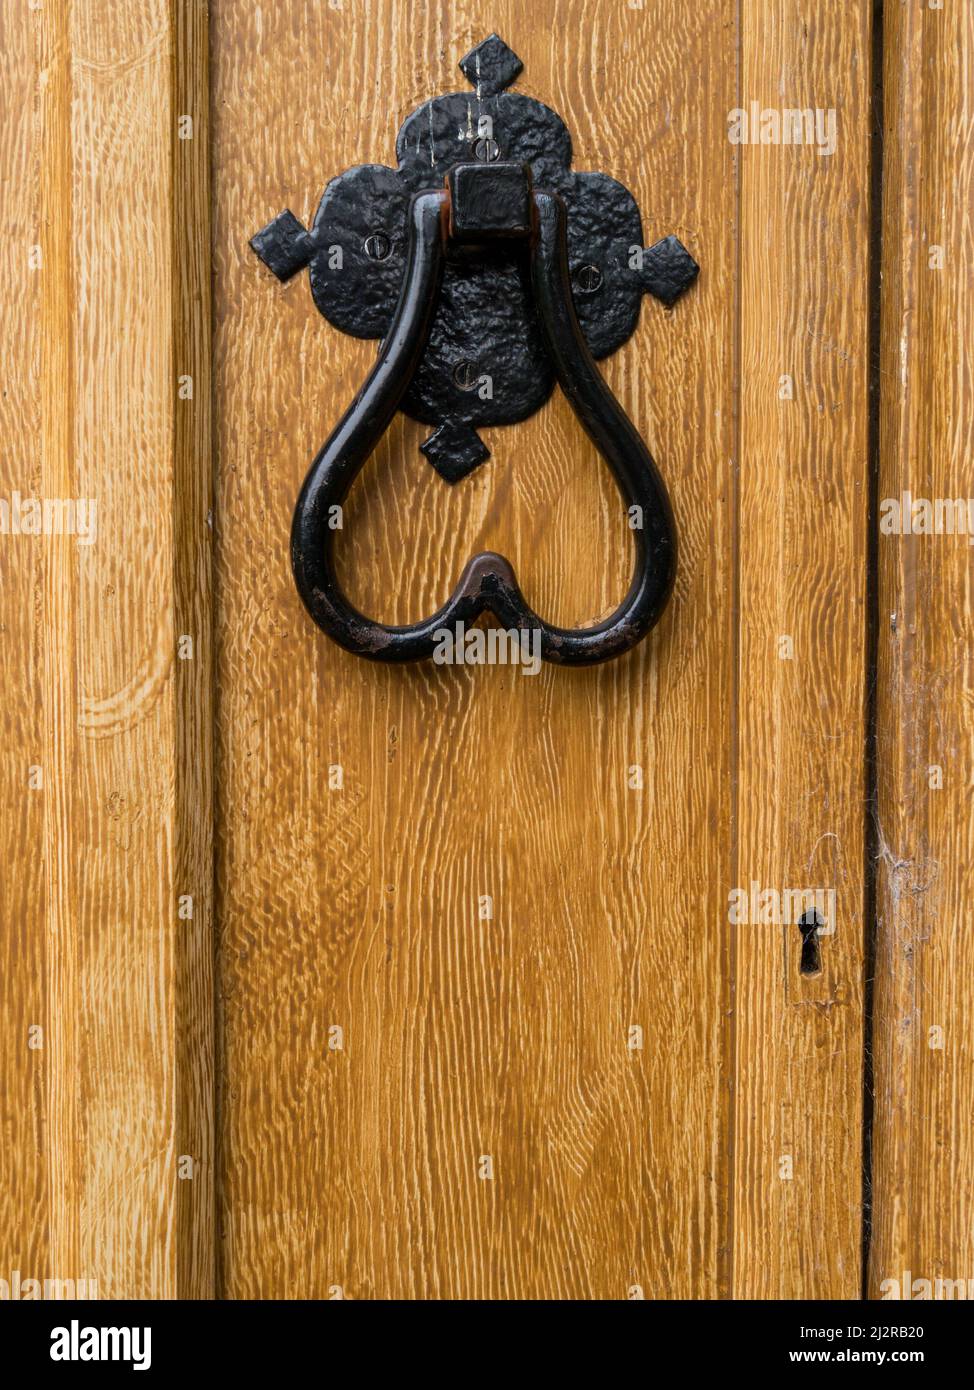 Porte en fer forgé en forme de coeur peint en noir sur porte en bois peint avec effet de faux-grain brun clair. Banque D'Images